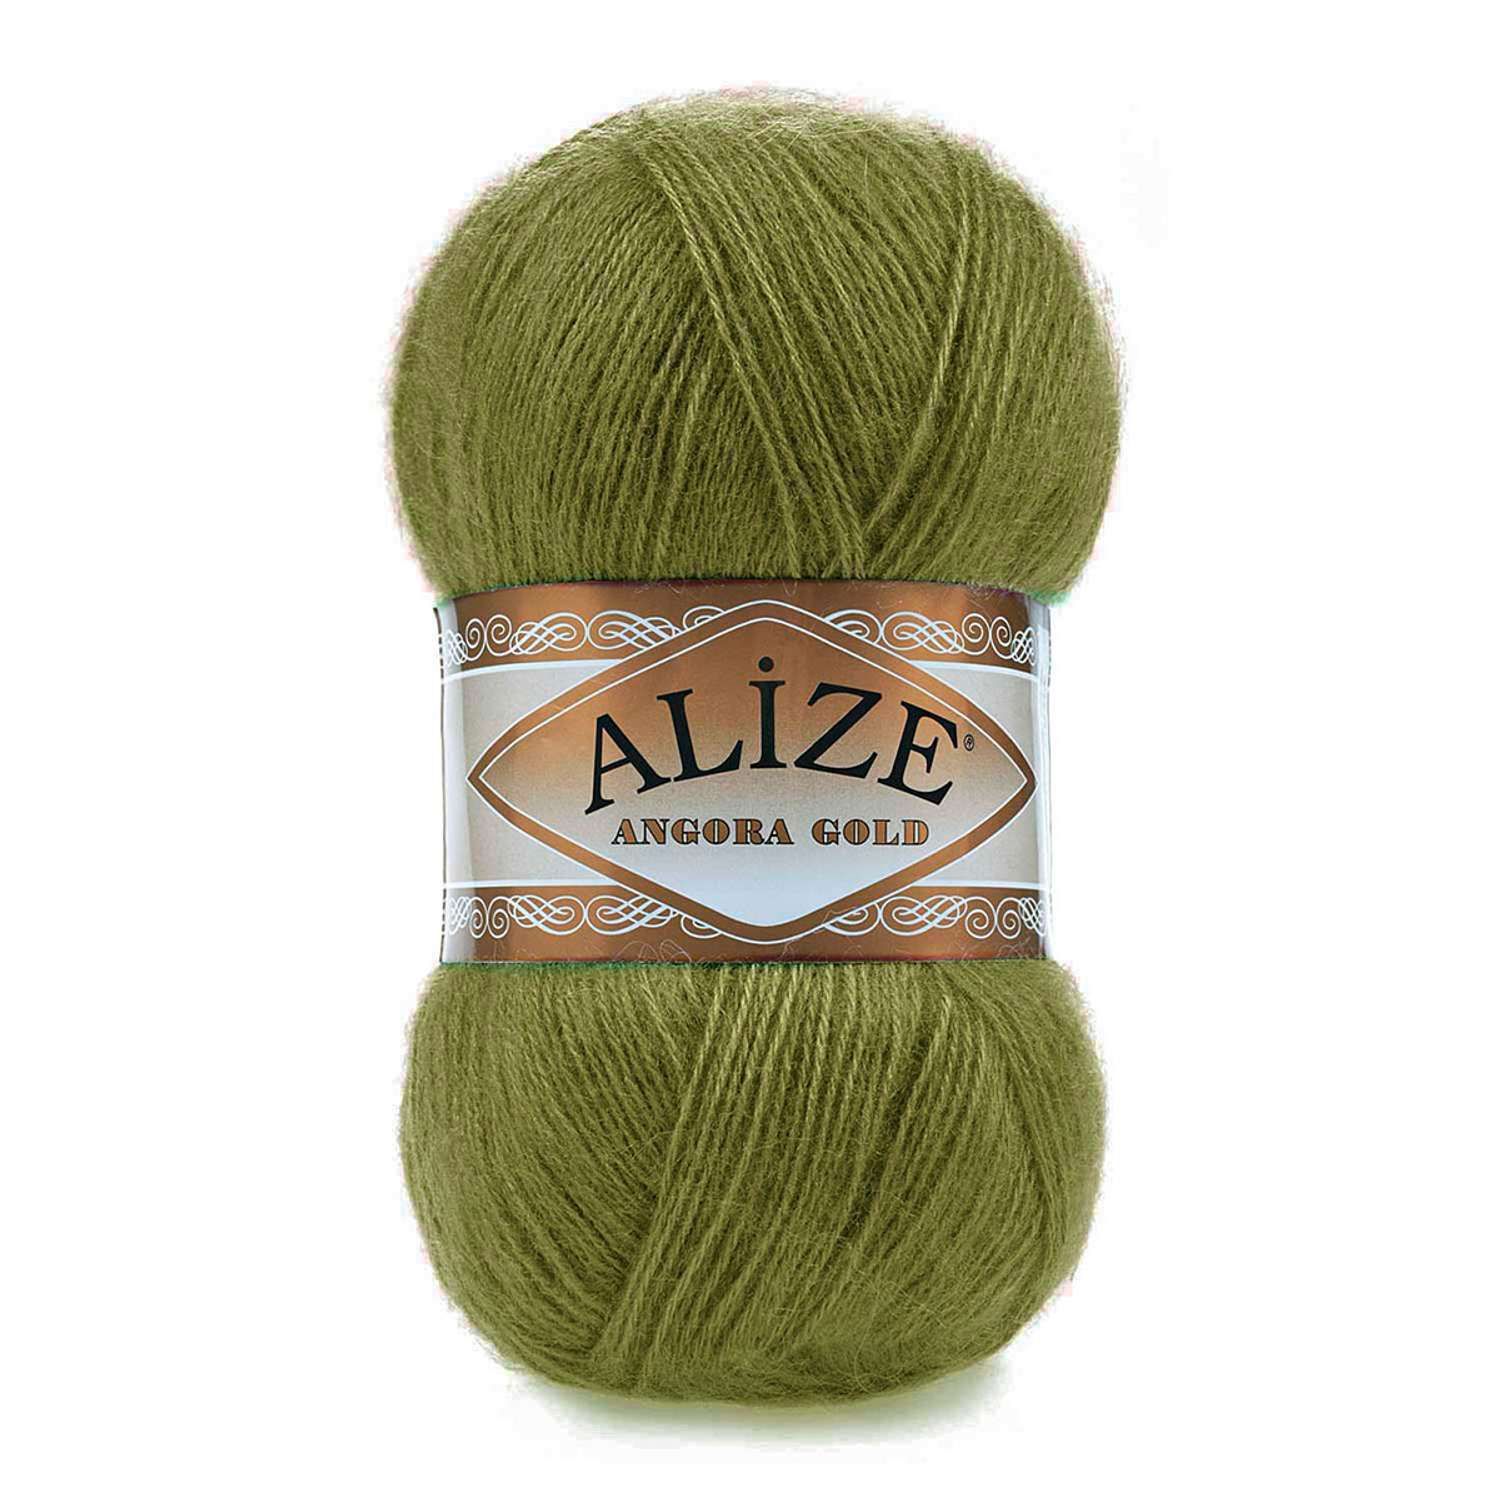 Пряжа Alize мягкая теплая для шарфов кардиганов Angora Gold 100 гр 550 м 5 мотков 758 оливковый - фото 6